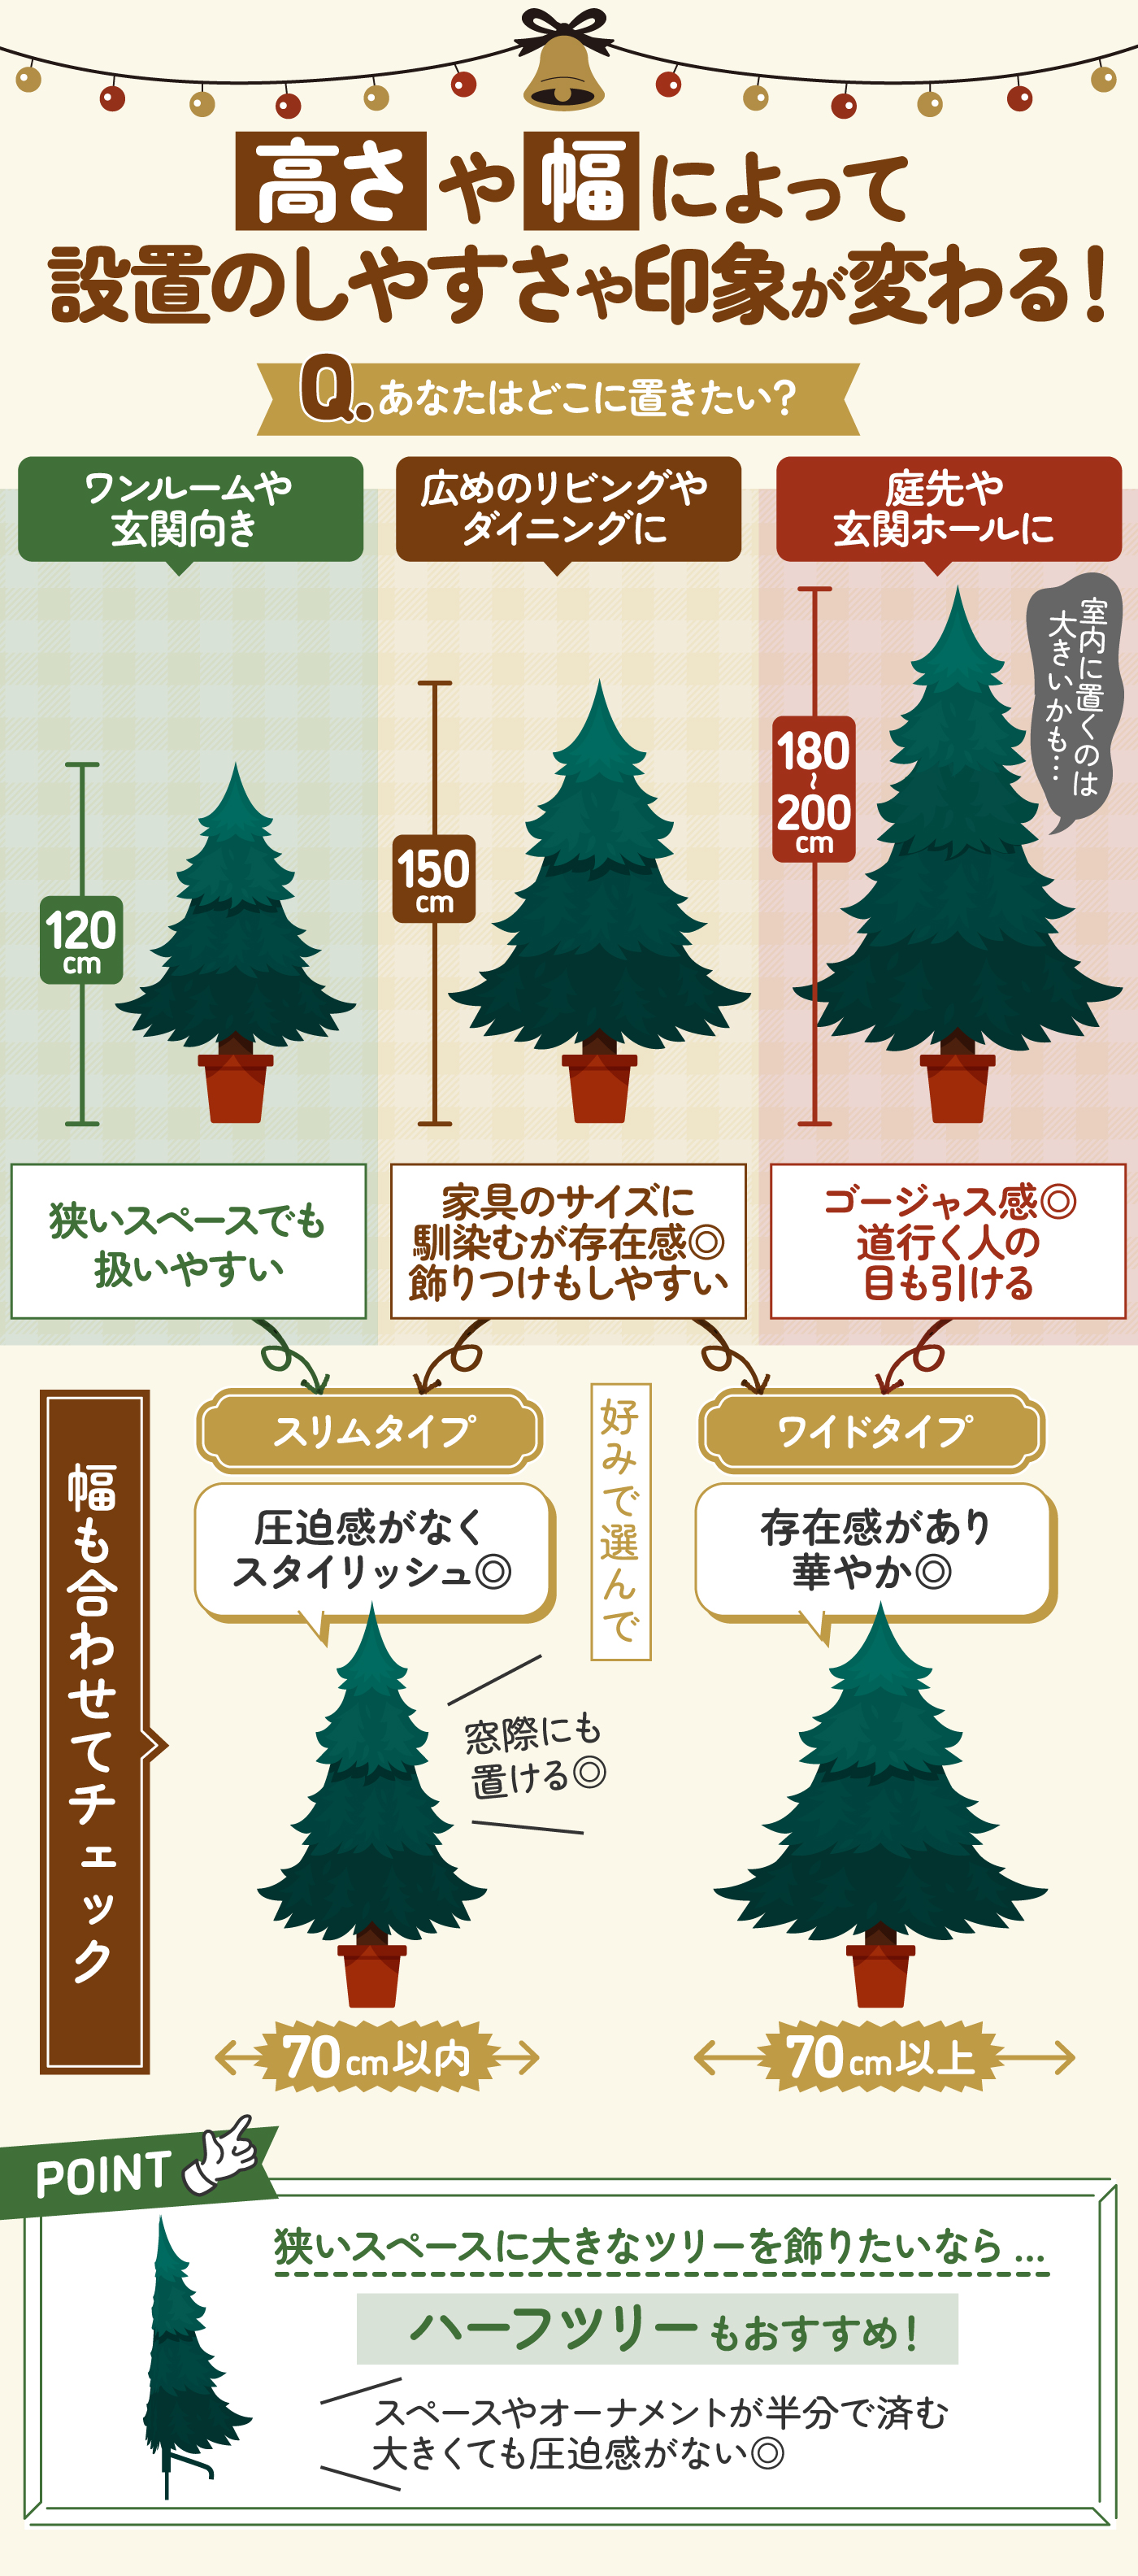 クリスマスツリー 枝大幅増量タイプ 赤い実付き、おしゃれなポリ成型葉混合クリスマスツリー 300CM KSBMA - 6